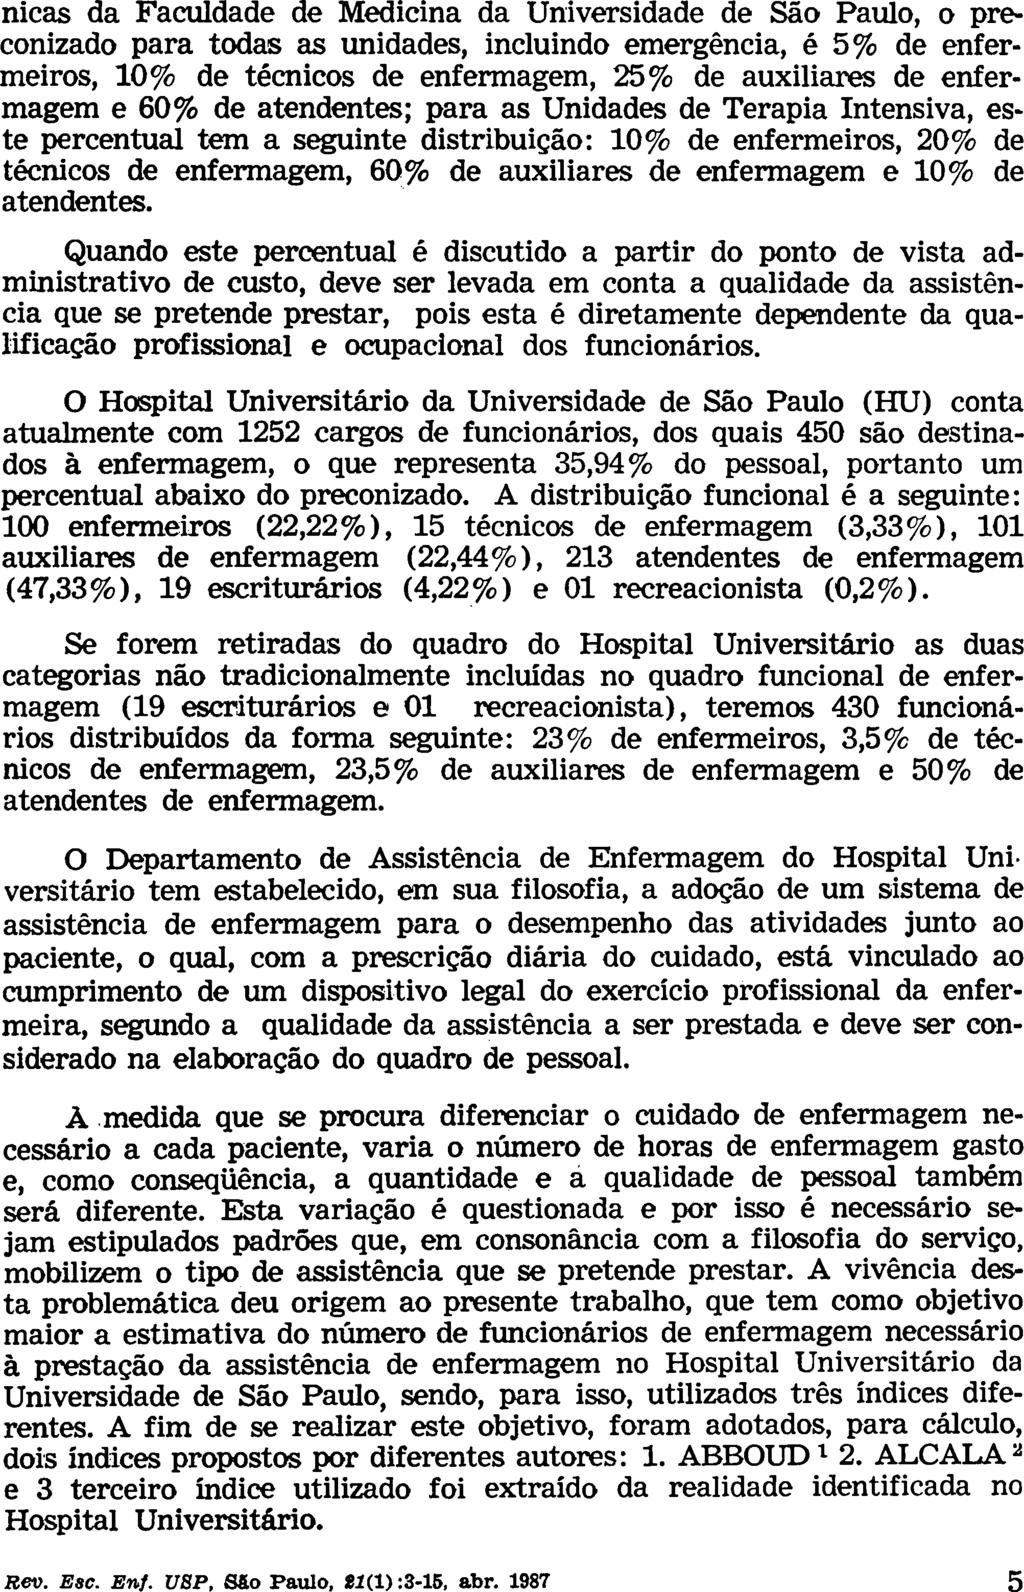 nicas da Faculdade de Medicina da Universidade de São Paulo, o preconizado para todas as unidades, incluindo emergencia, é 5% de enfermeiros, 10% de técnicos de enfermagem, 25% de auxiliares de